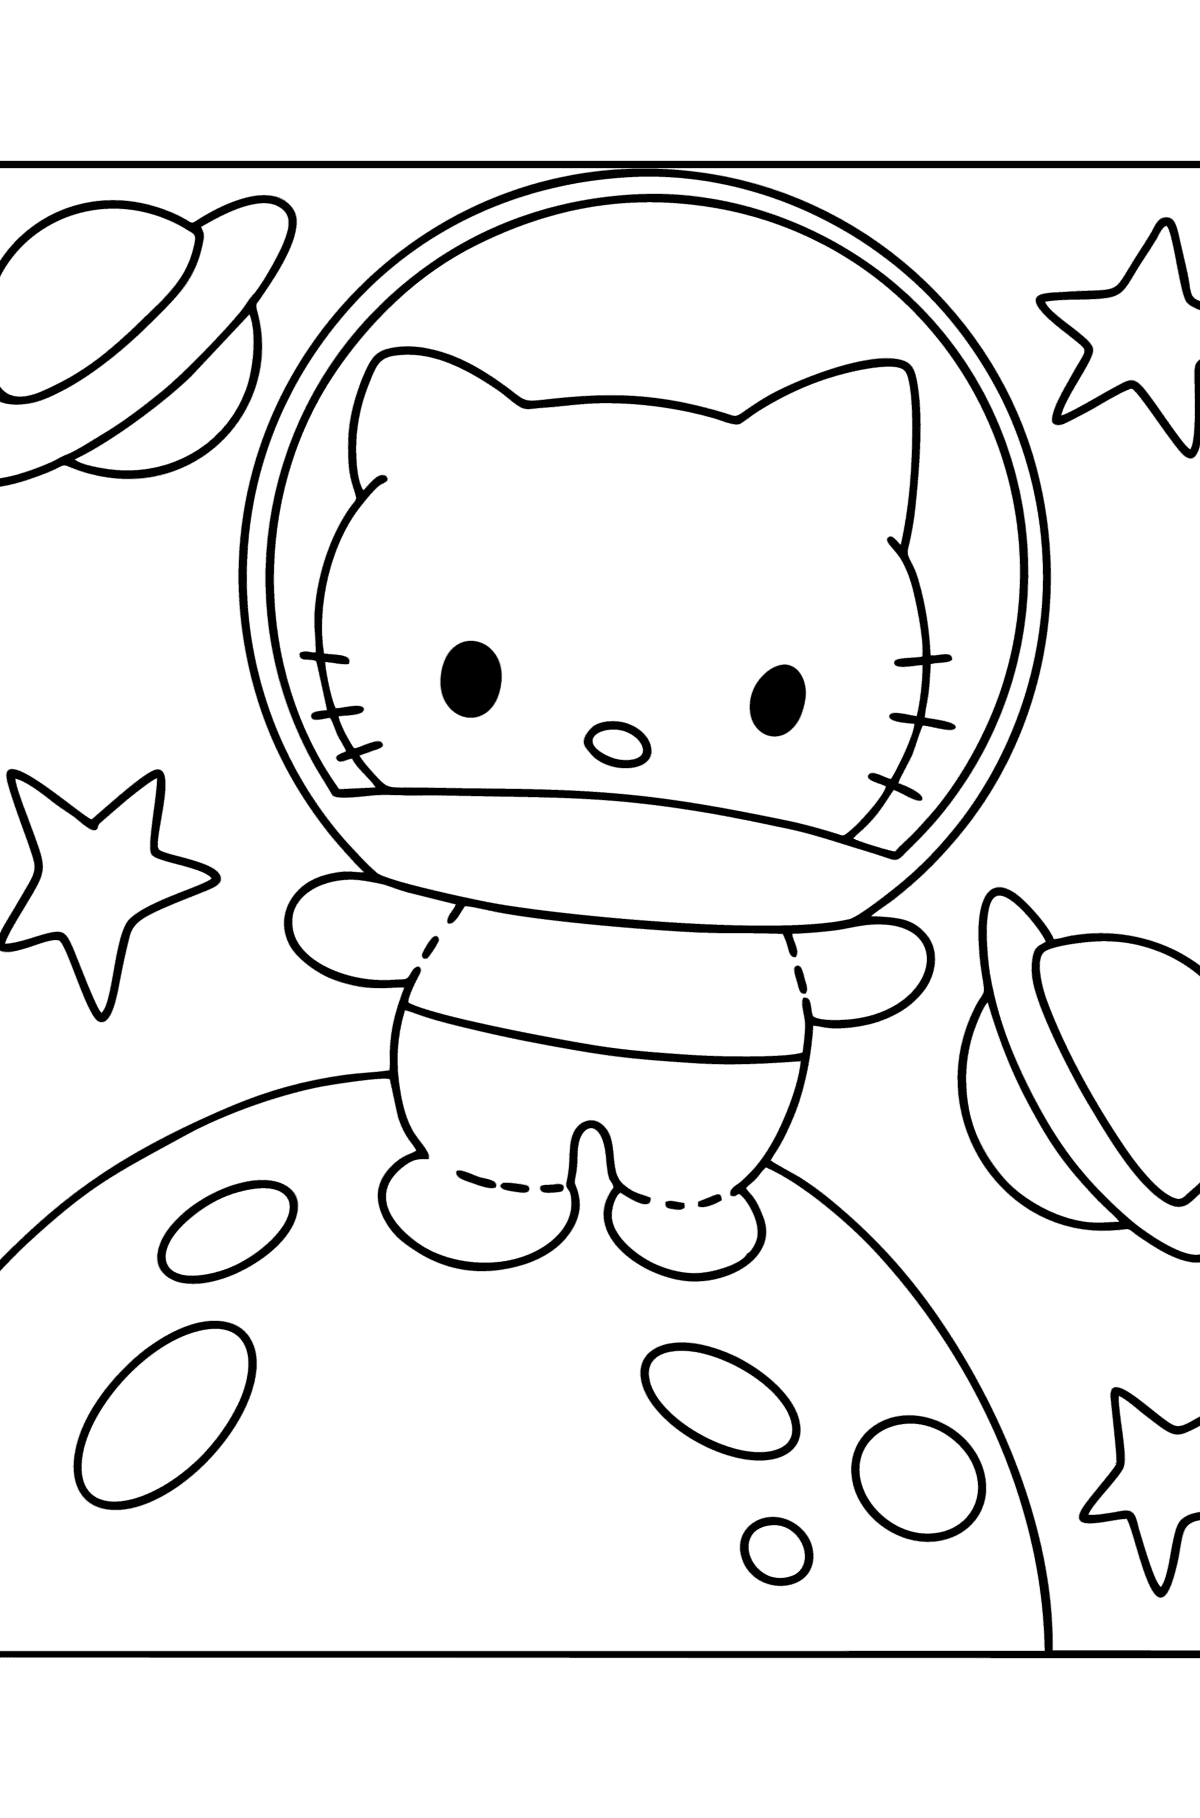 Desen de colorat Hello Kitty astronaut - Desene de colorat pentru copii